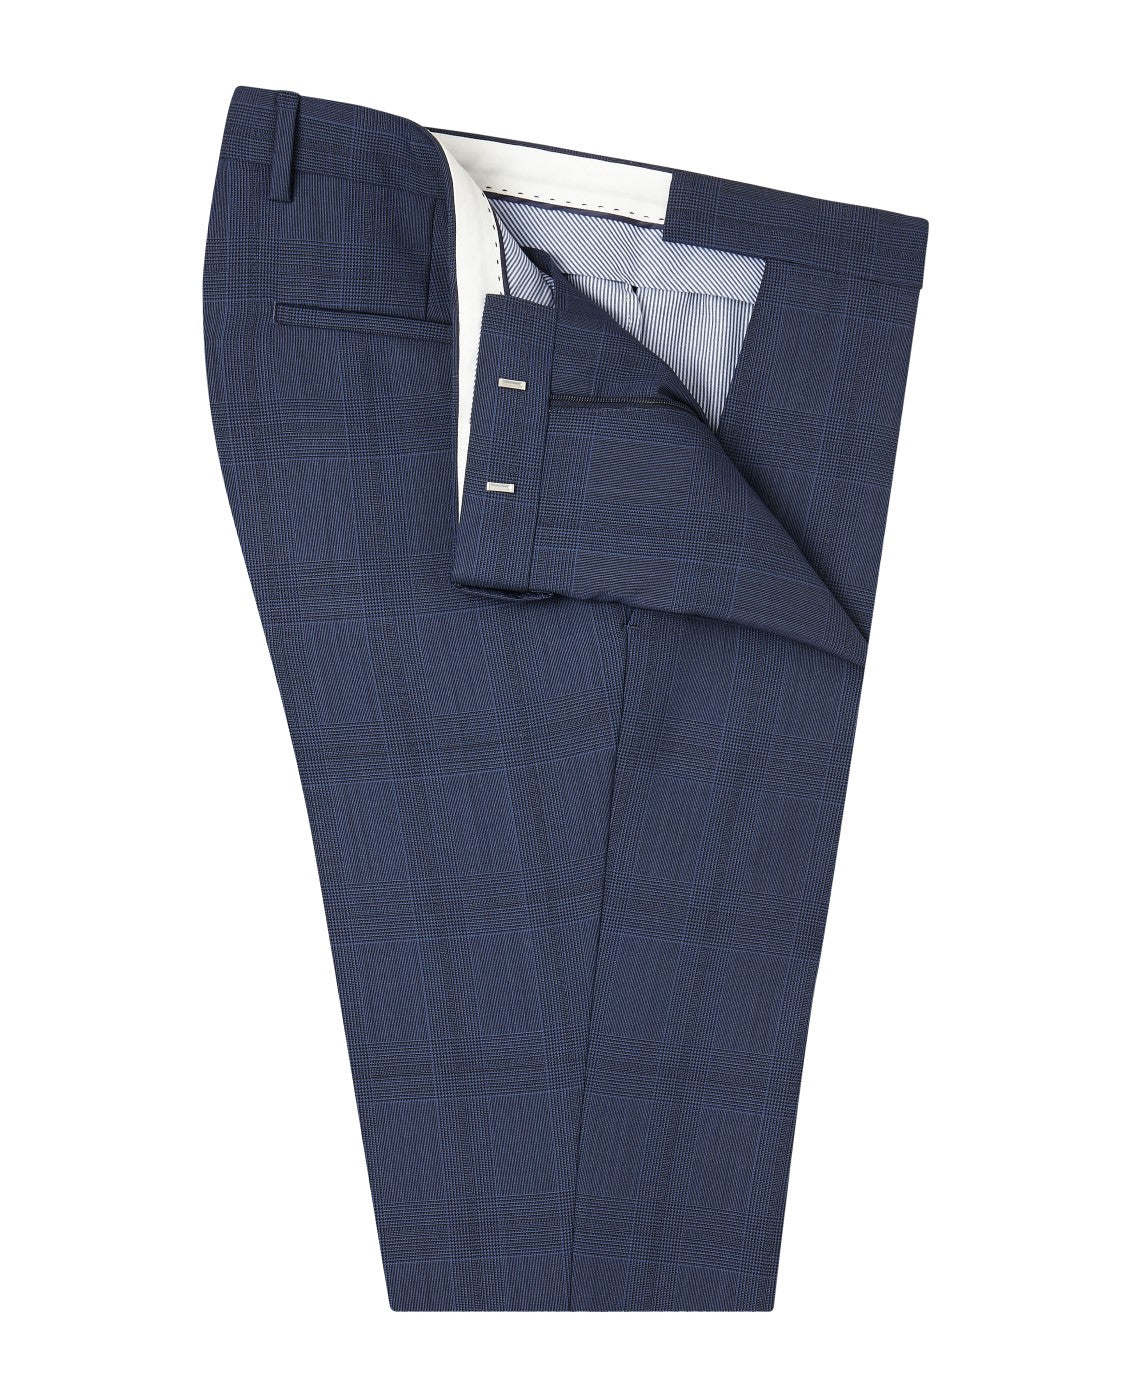 Image 1 of Roehampton Barberis Slim Fit Denim Blue Check Trousers